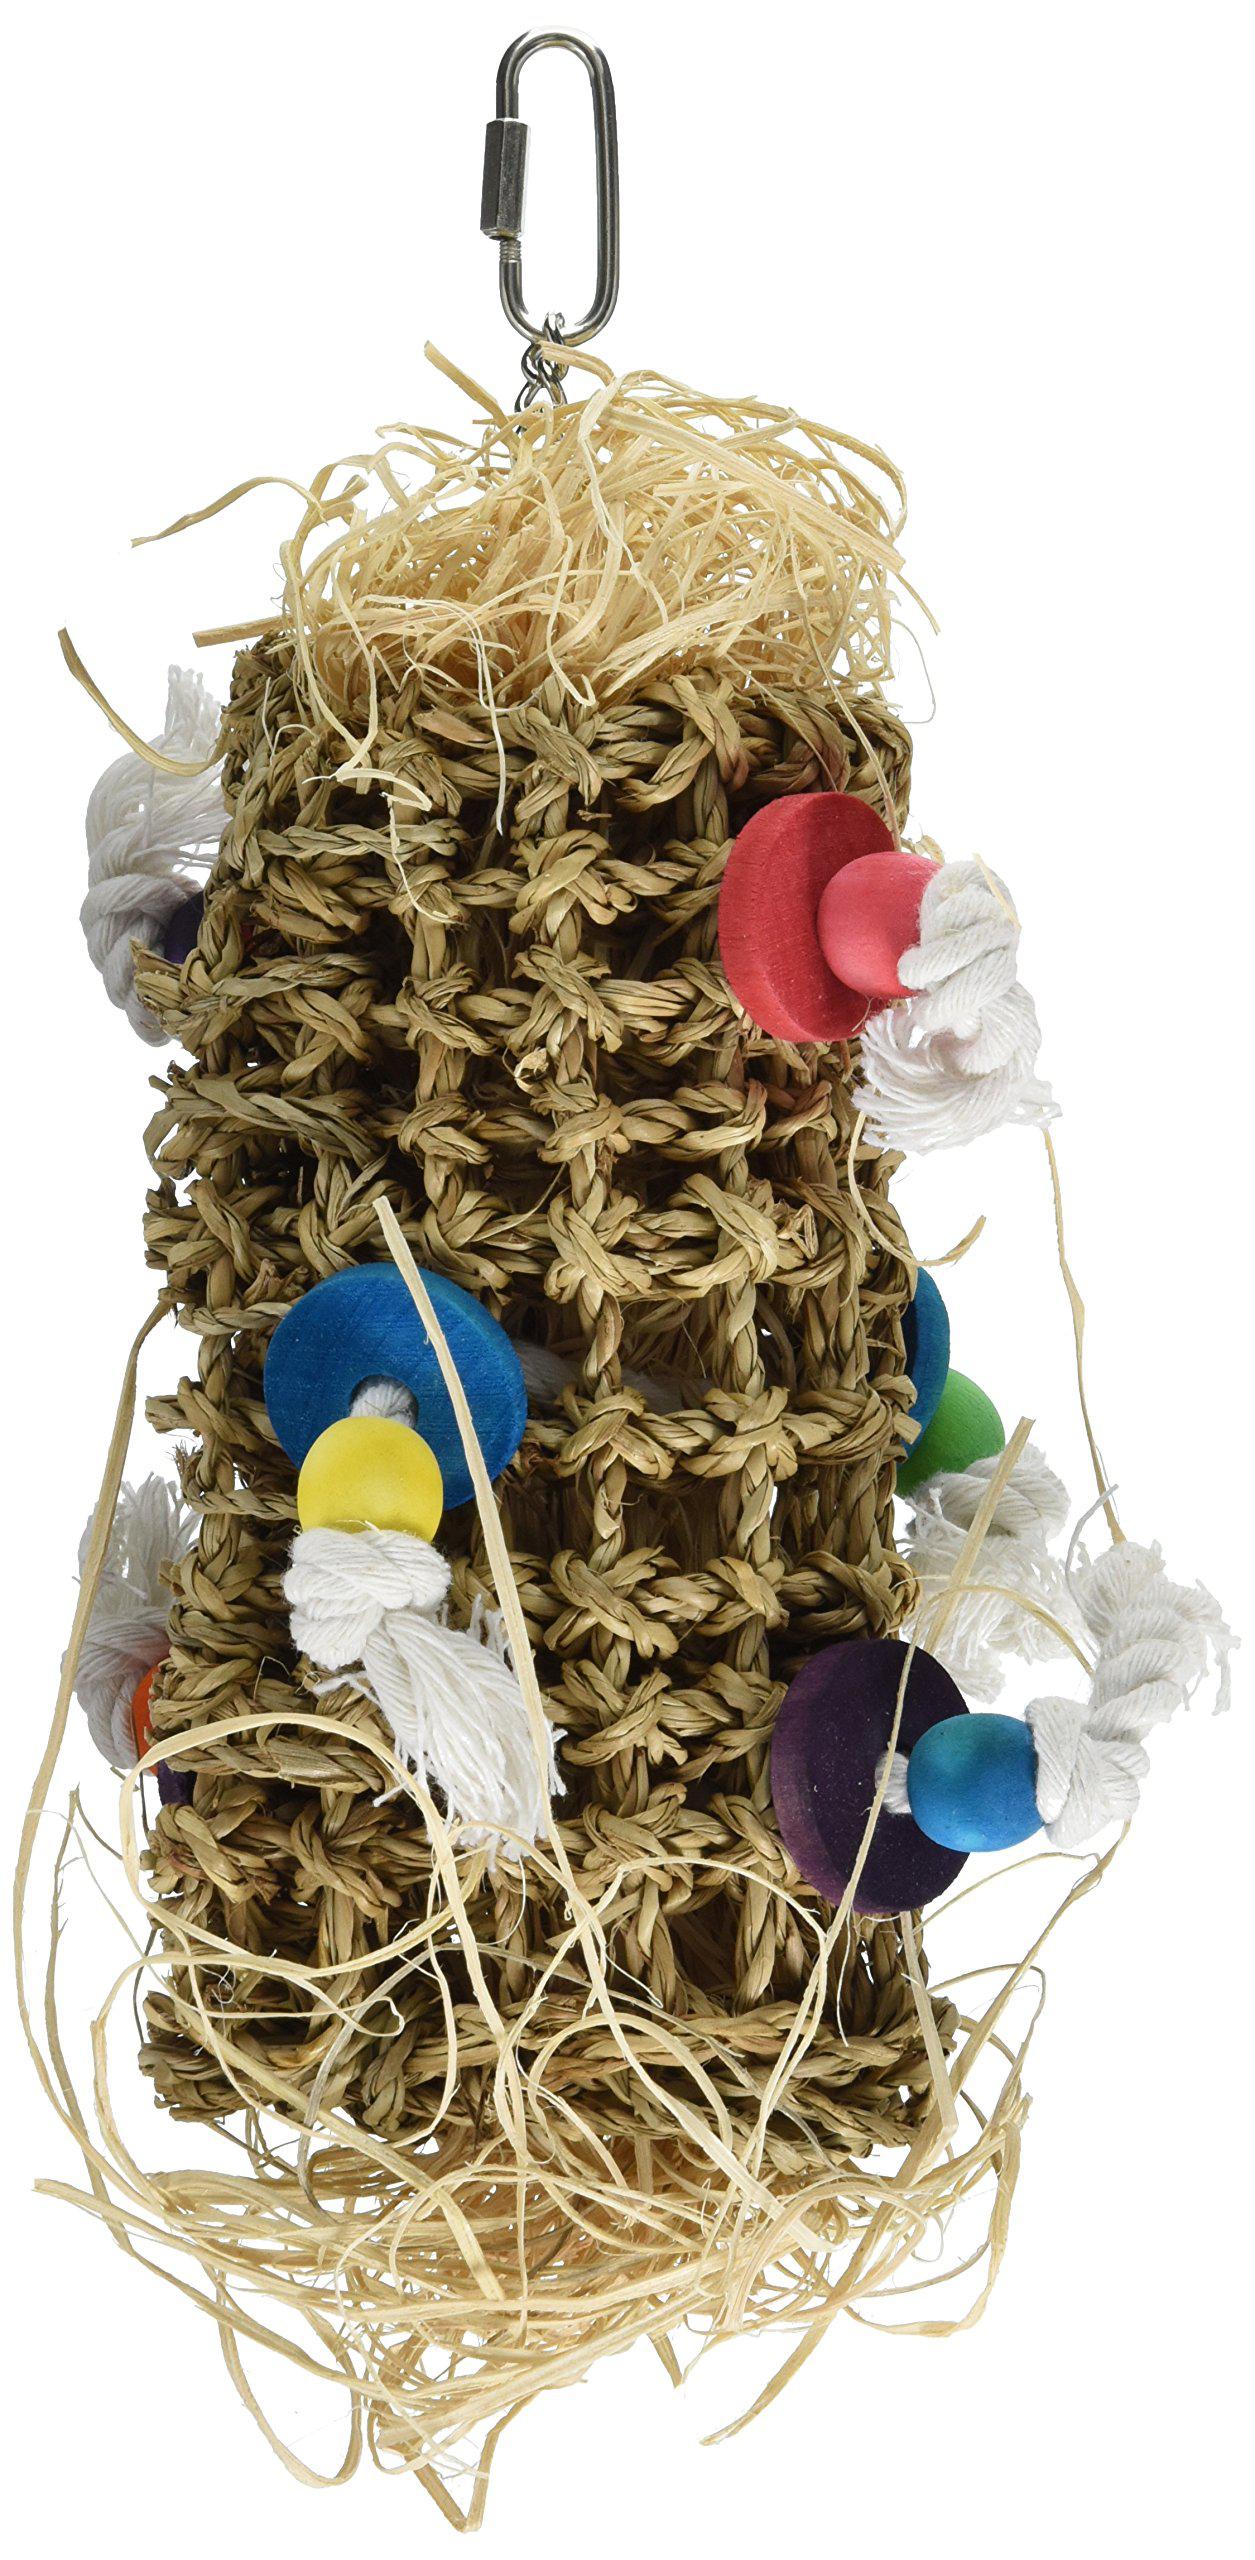 Penn-Plax penn plax, bird life, natural weave kabob bird toy, 12"h